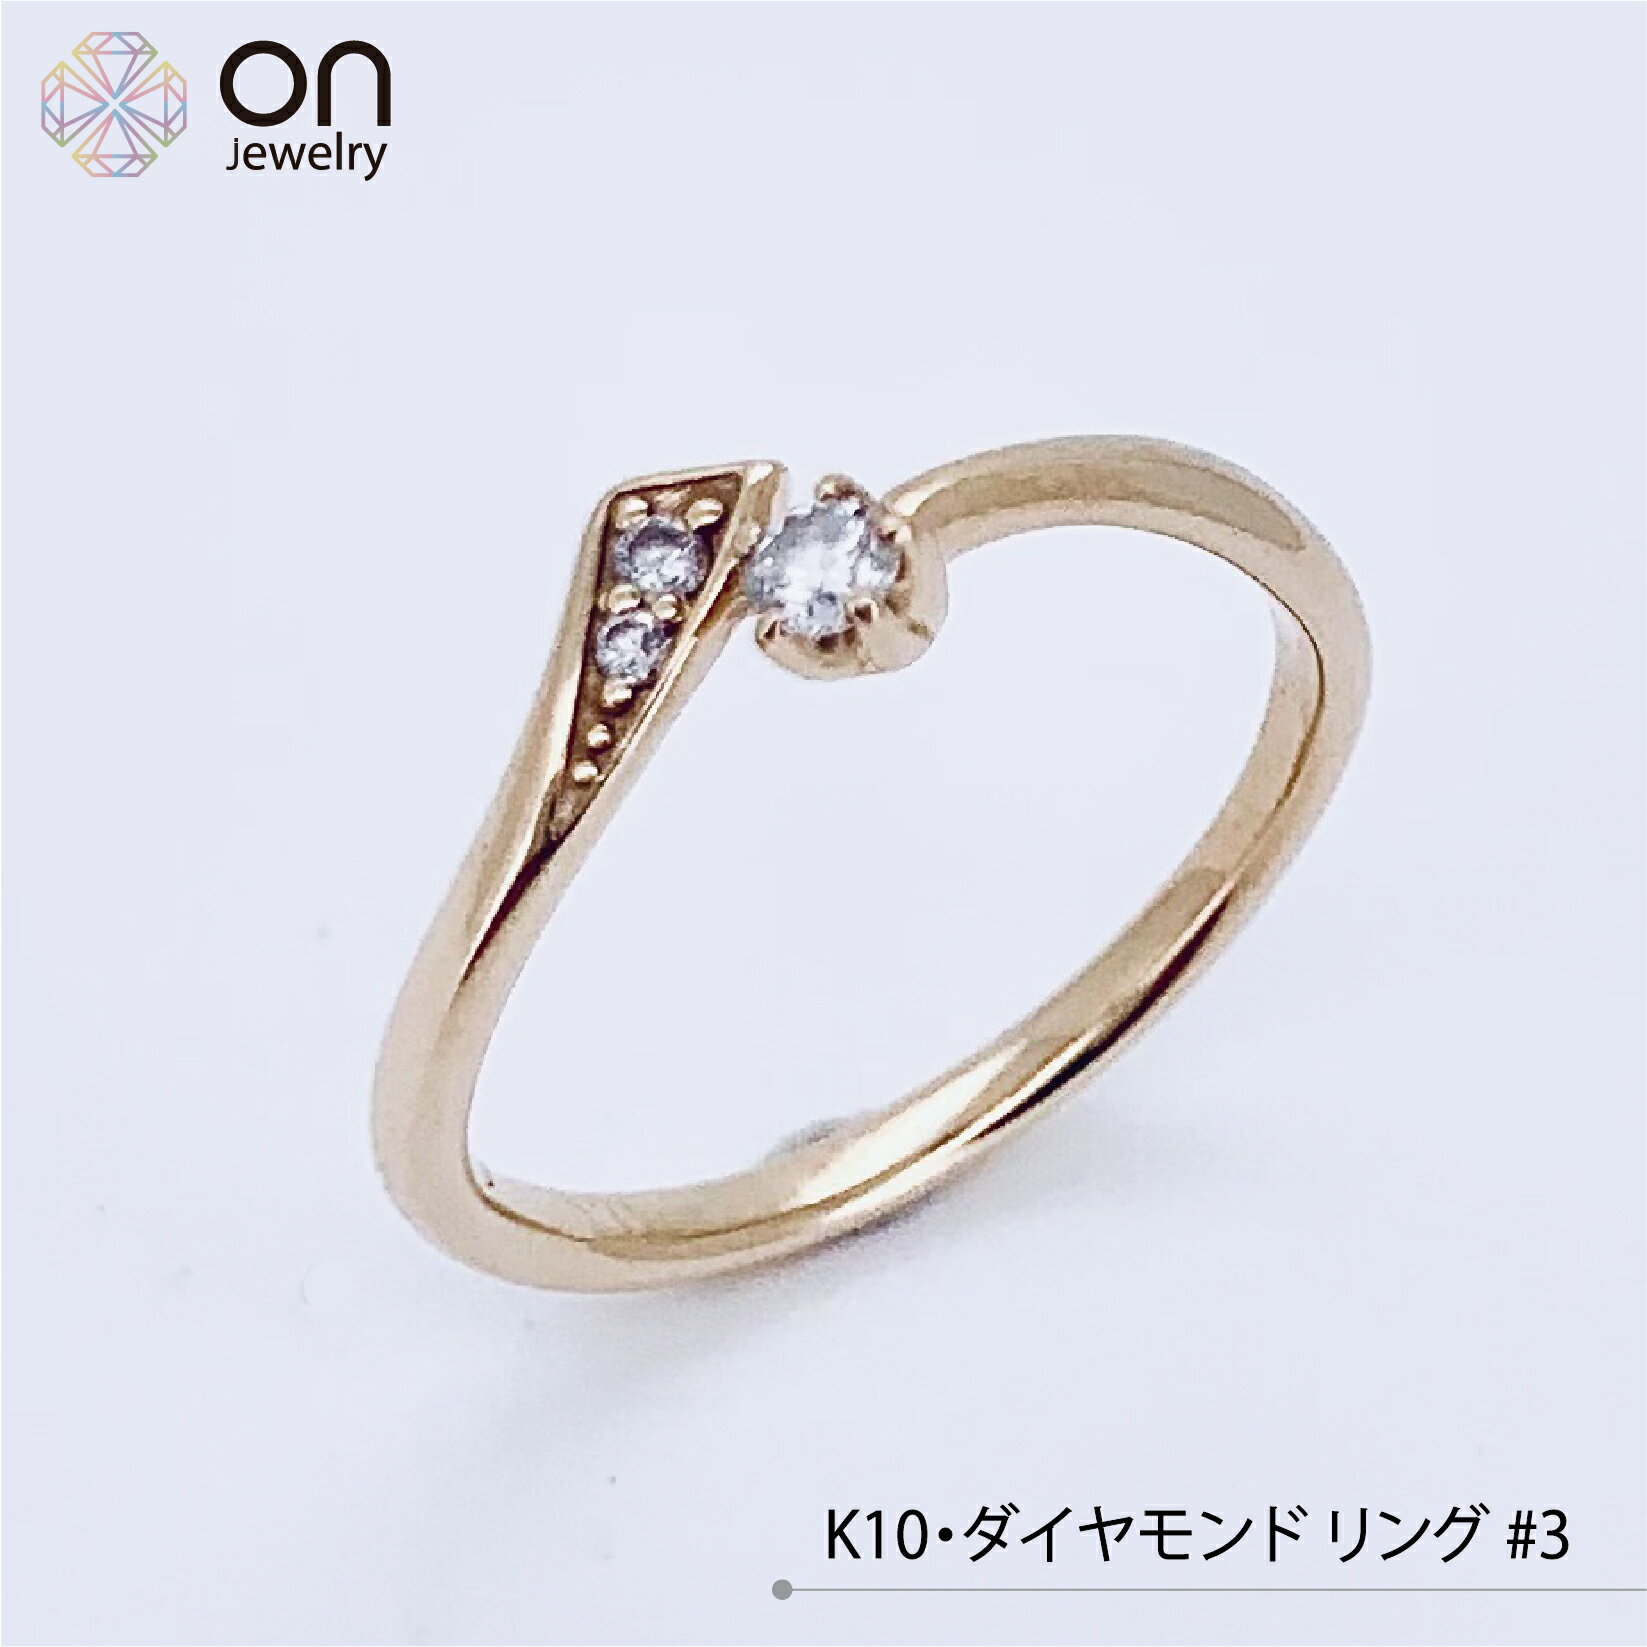 K10 ゴールド ダイヤモンド0.01ct イエローゴールド 10金 ピンキーリング リング デザイン 指輪2号 ±4までサイズ直し無料 コンディションSランク 新品仕上げ済みの商品